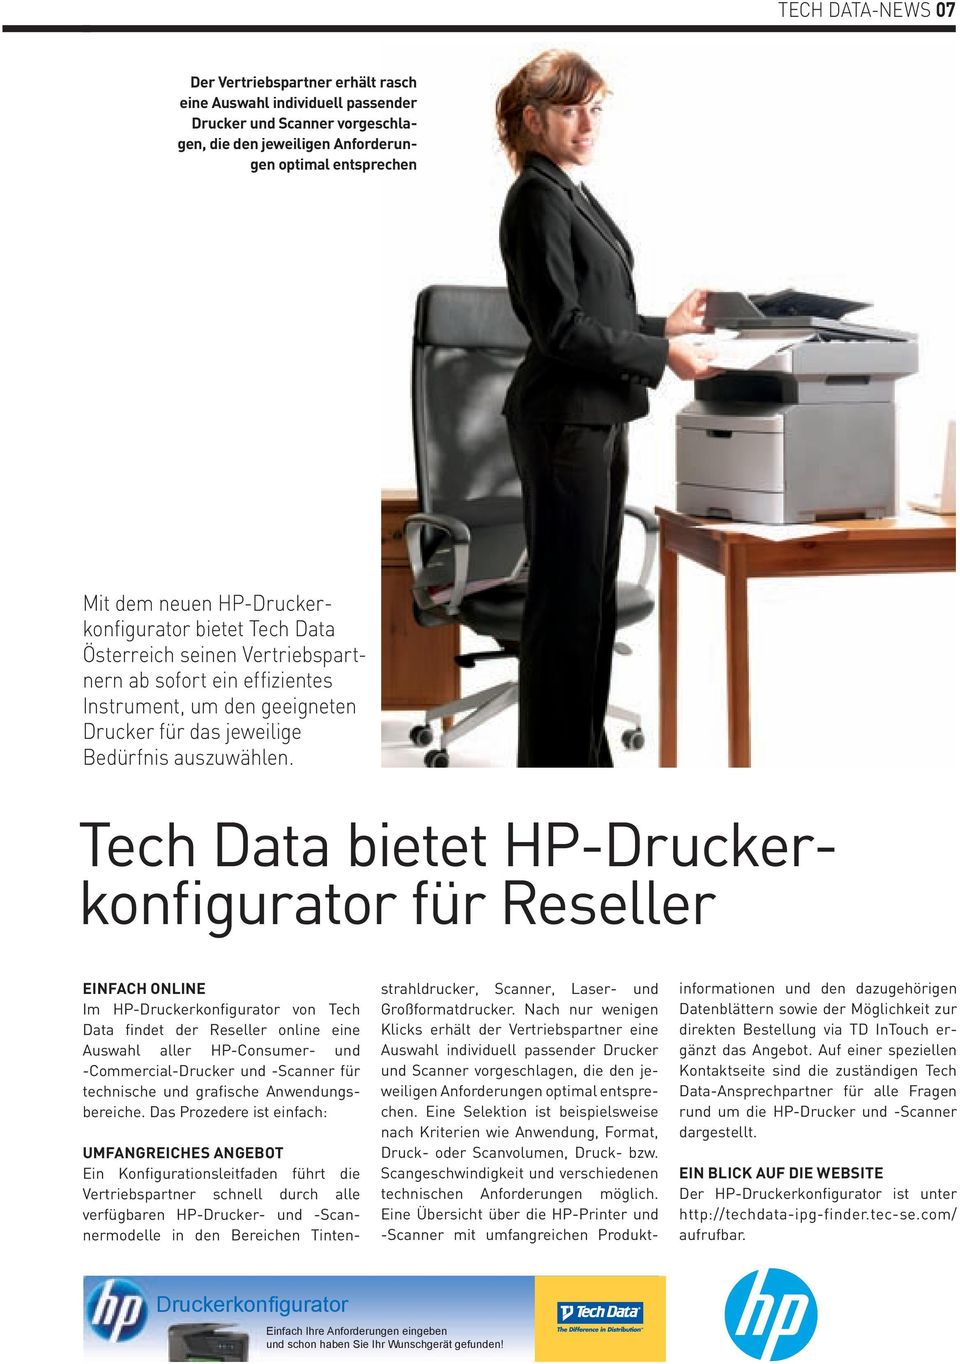 Tech Data bietet HP-Druckerkonfigurator für Reseller EINFACH ONLINE Im HP-Druckerkonfigurator von Tech Data findet der Reseller online eine Auswahl aller HP-Consumer- und -Commercial-Drucker und